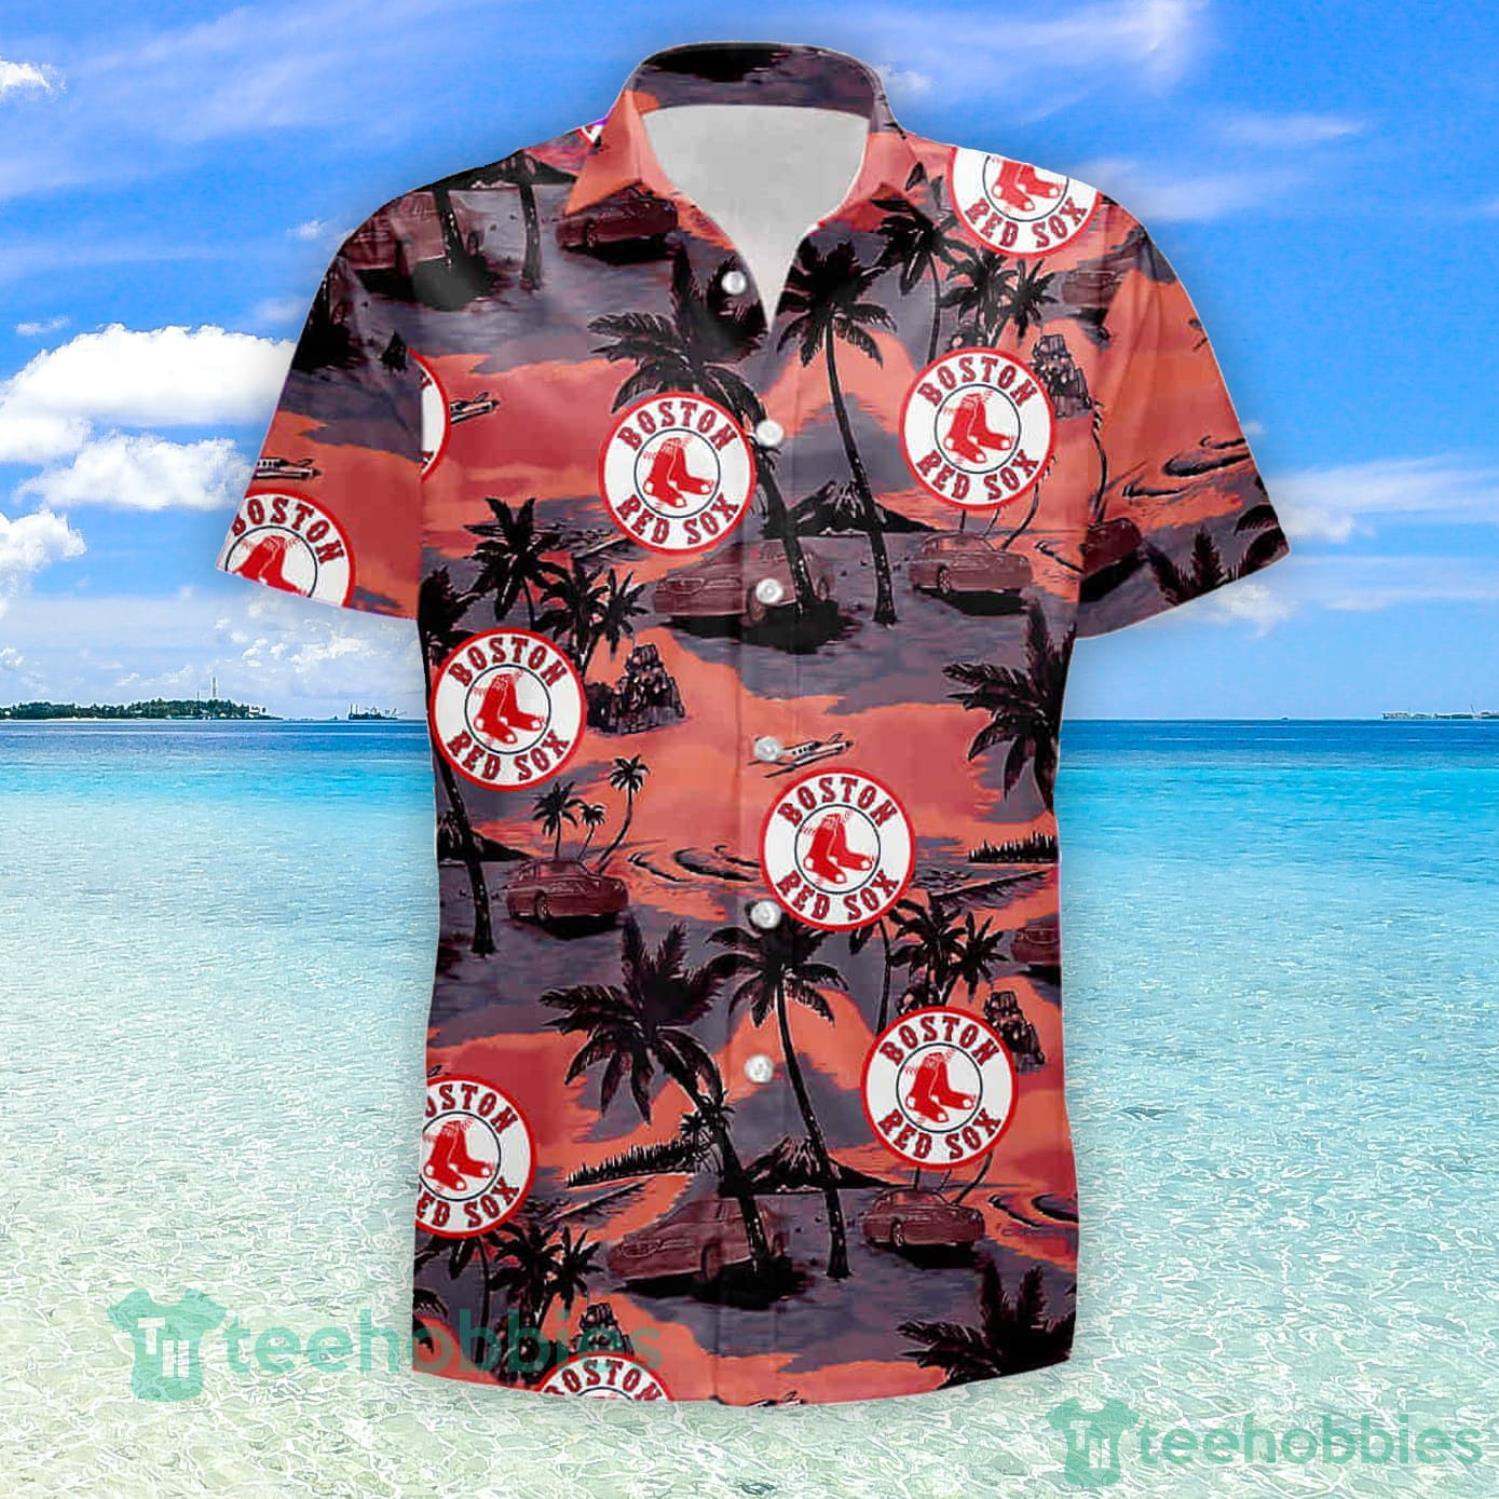 https://image.teehobbies.us/2023/01/boston-red-sox-mlb-tommy-bahama-hawaii-summer-hawaiian-shirt-and-short.jpg